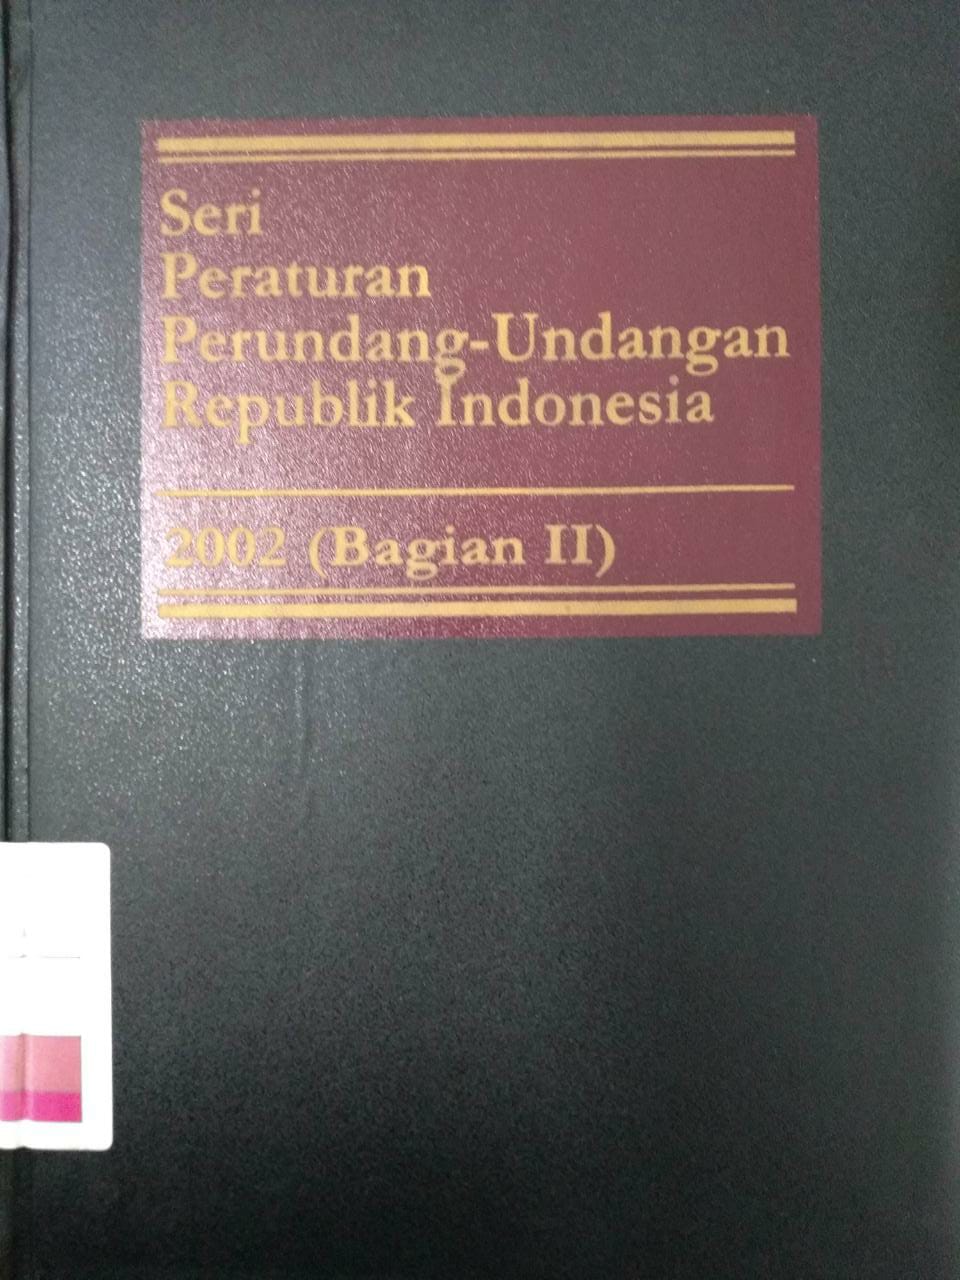 Seri Peraturan Perundang-undangan Republik Indonesia 2004 (Bagian III)